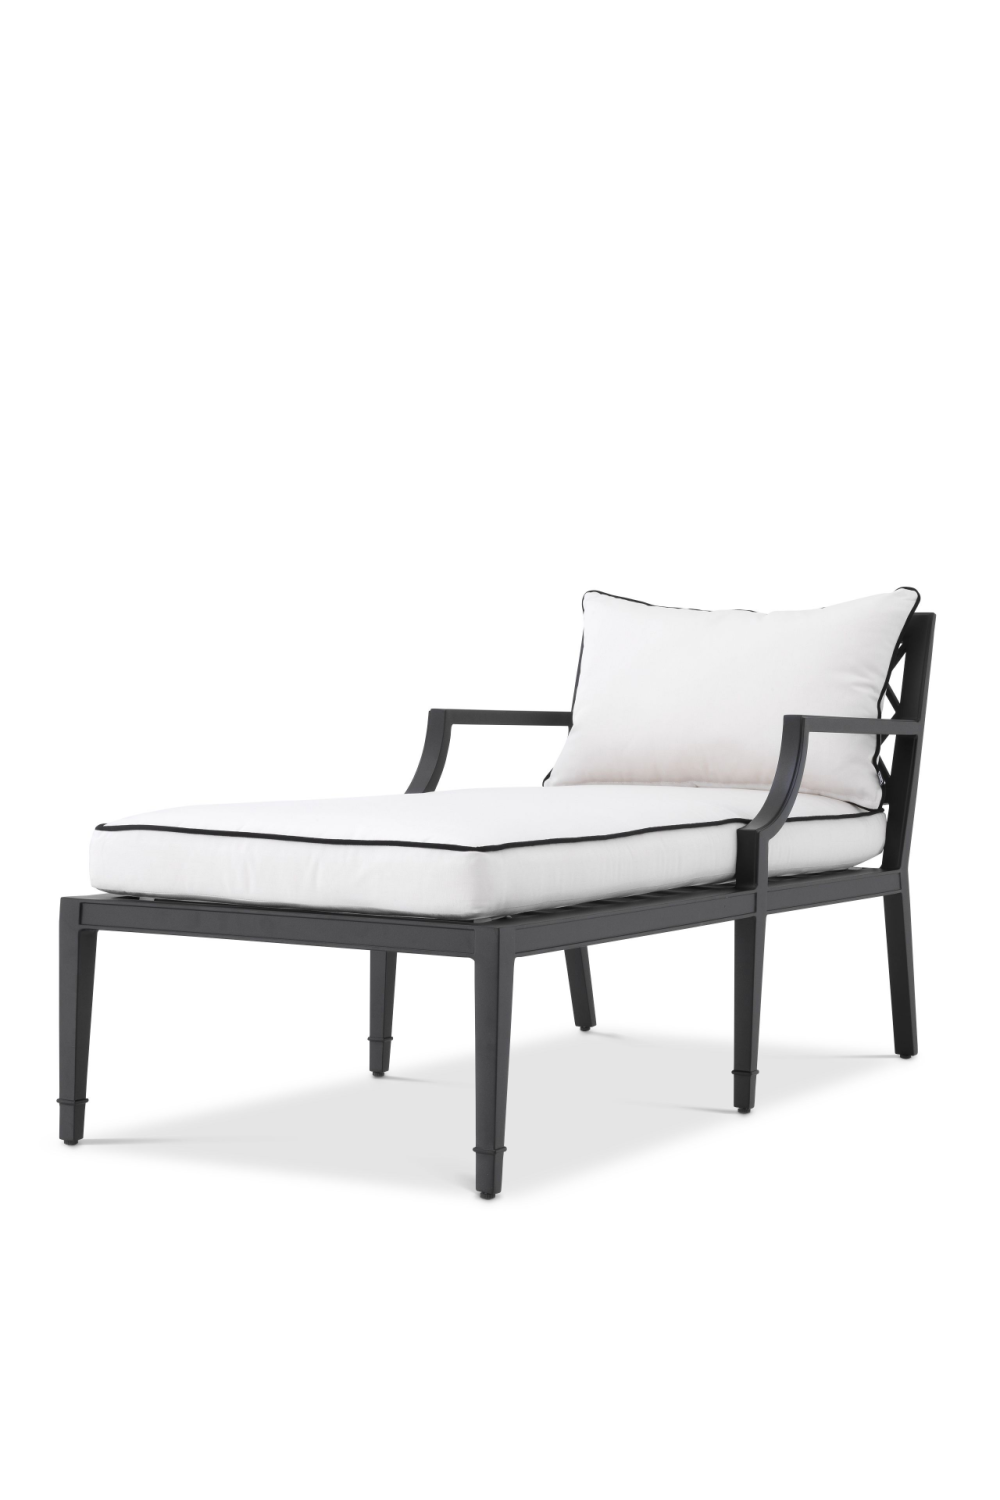 Chaise Outdoor Lounge Chair | Eichholtz Bella Vista | Oroa.com